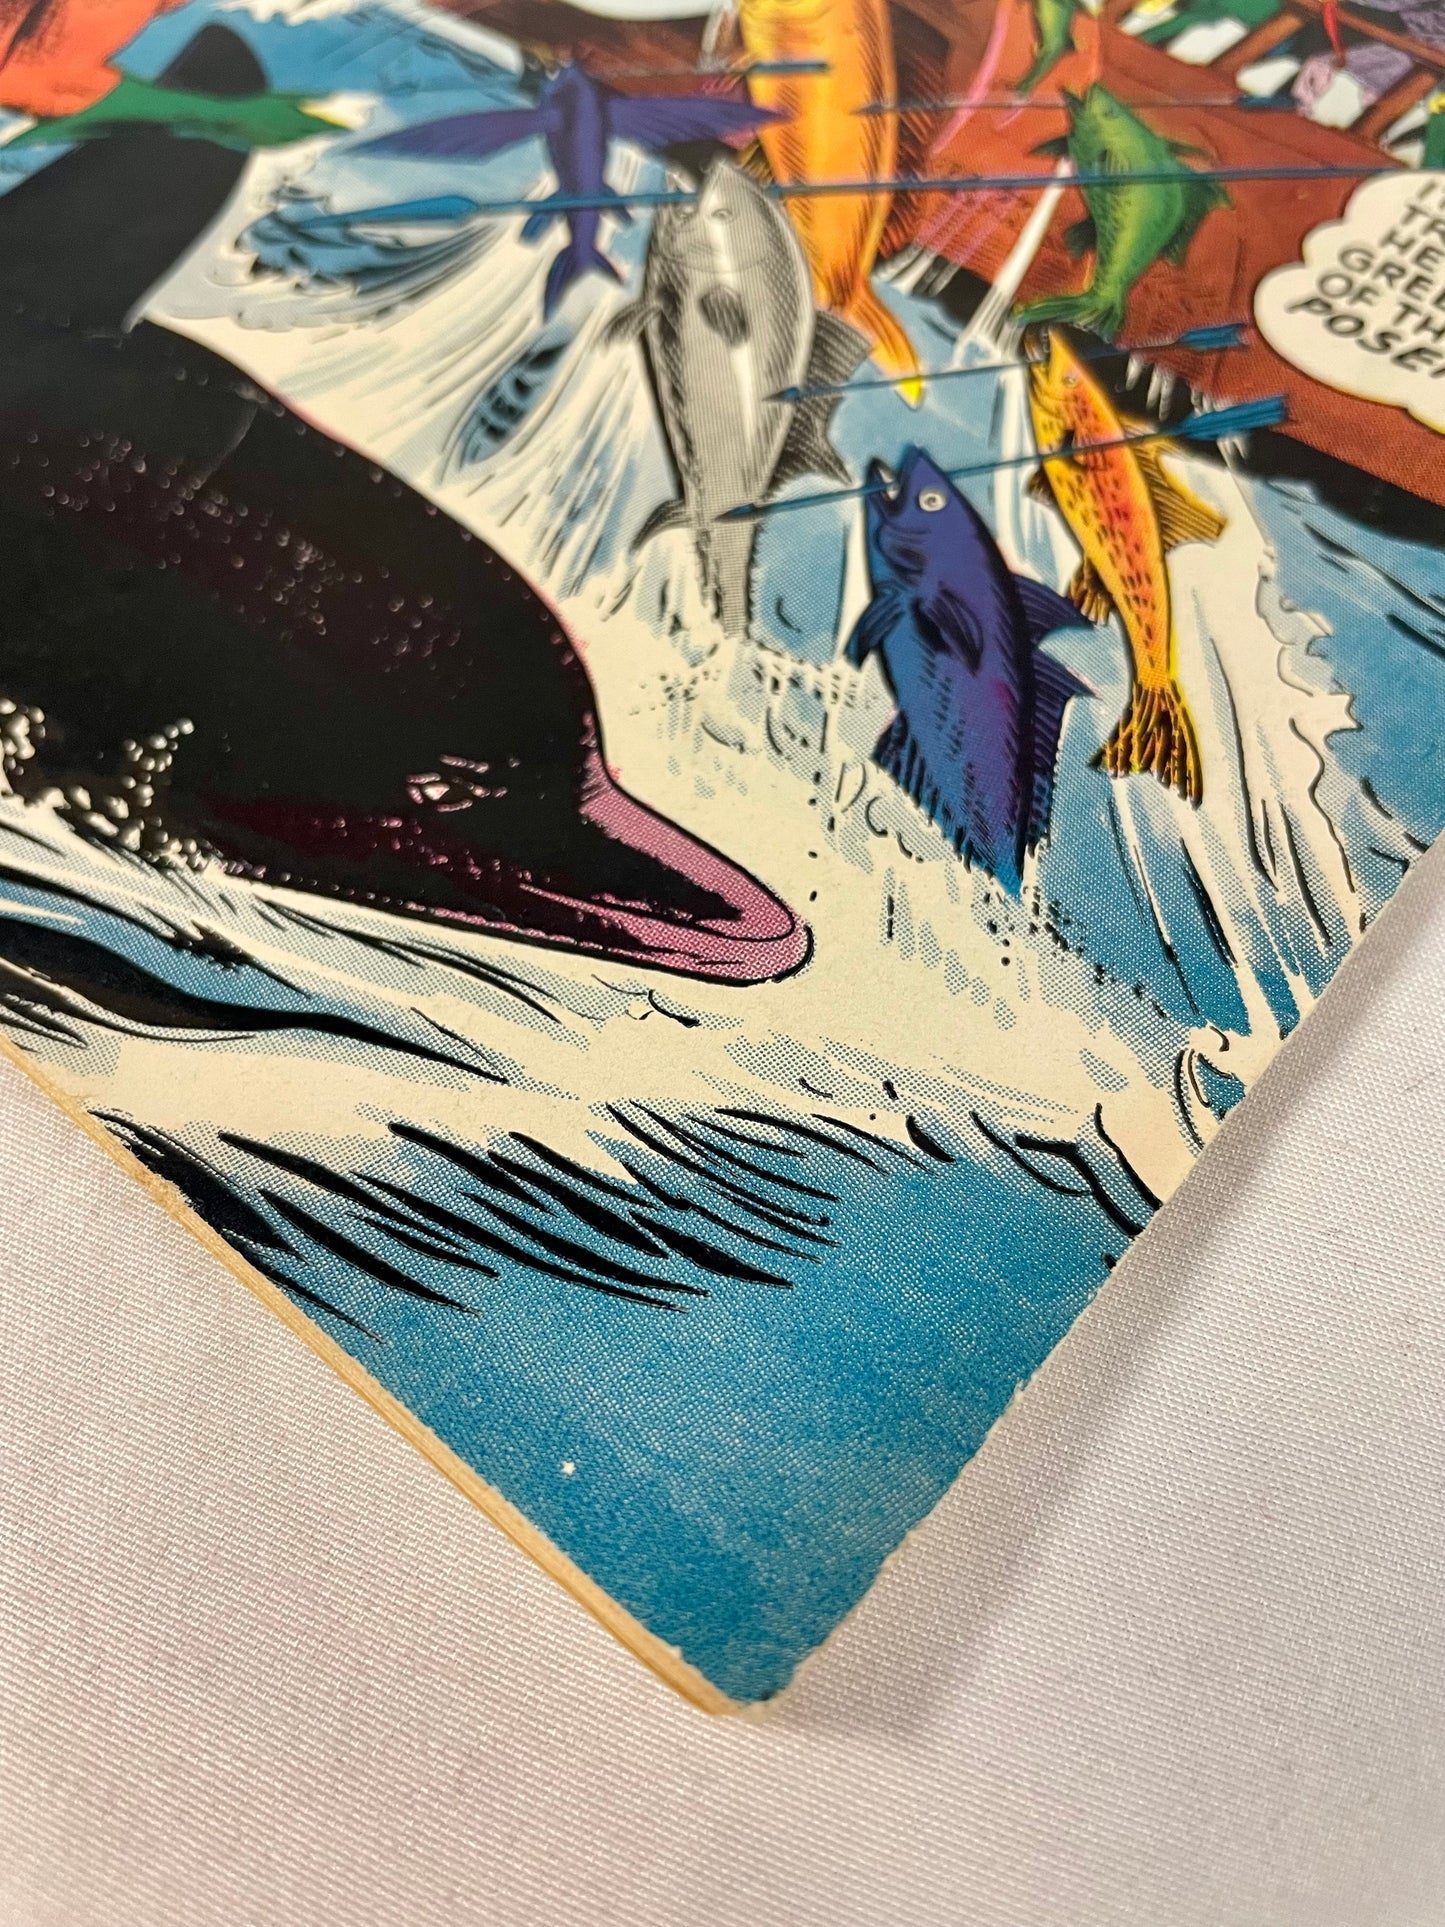 DC Comics Aquaman No. 3